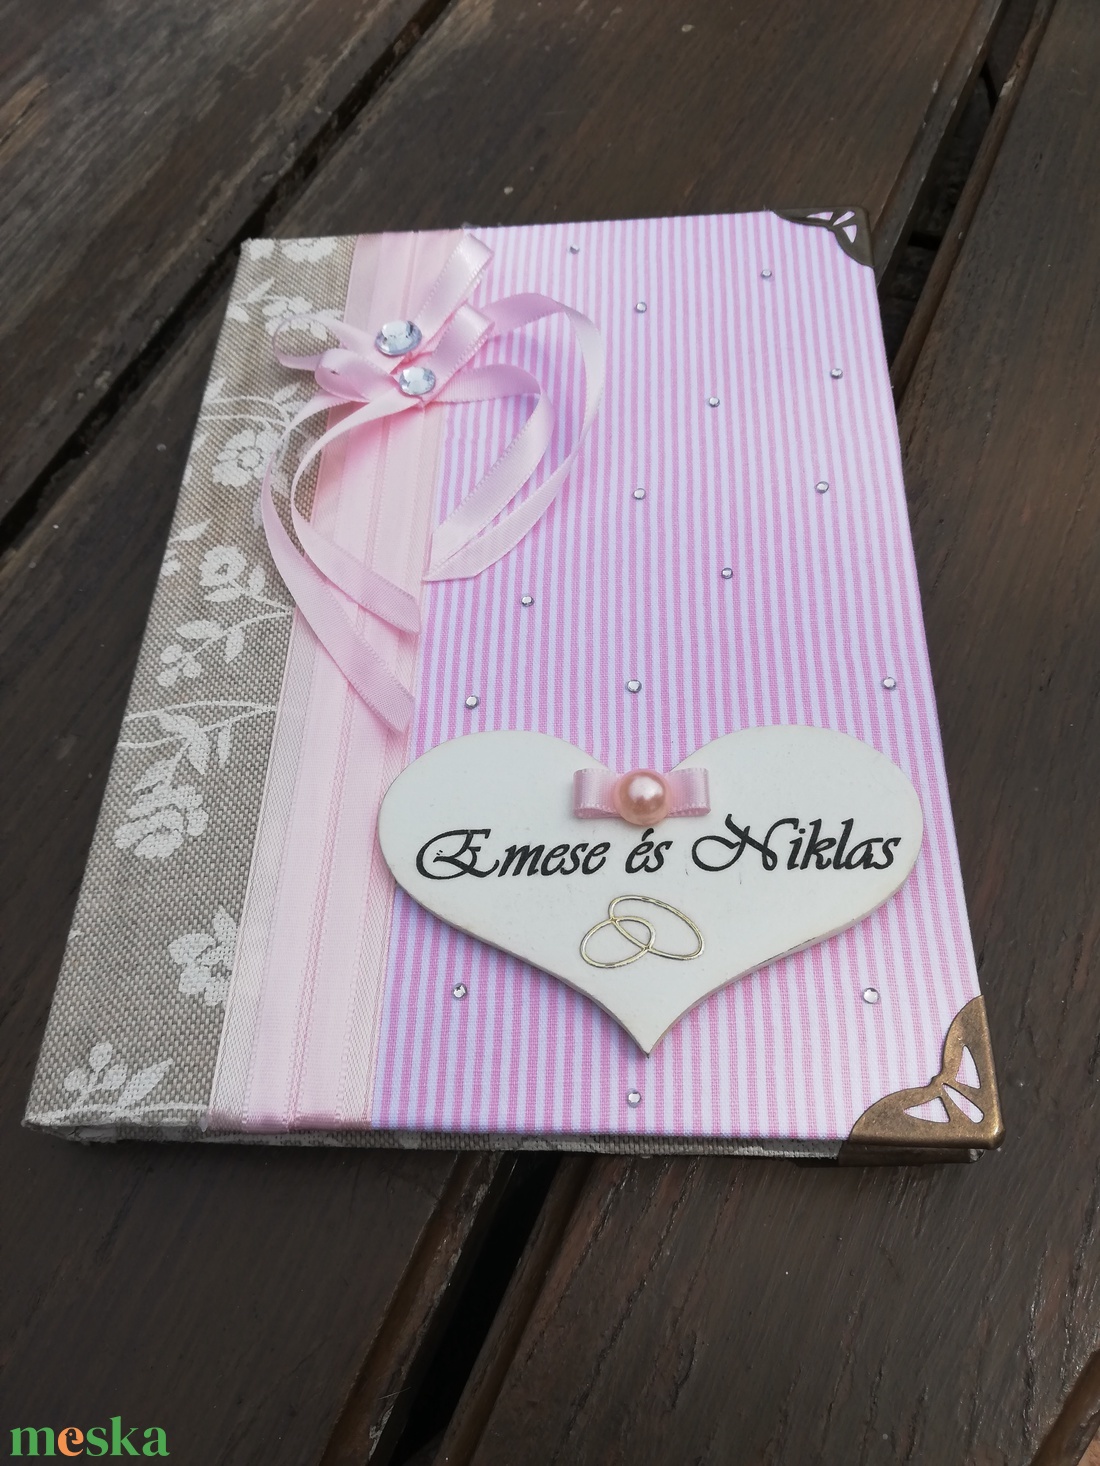 Elegáns vendégkönyv esküvőre, egyedi felirattal vagy akár fotóval is.   :-) - esküvő - emlék & ajándék - vendégkönyv - Meska.hu